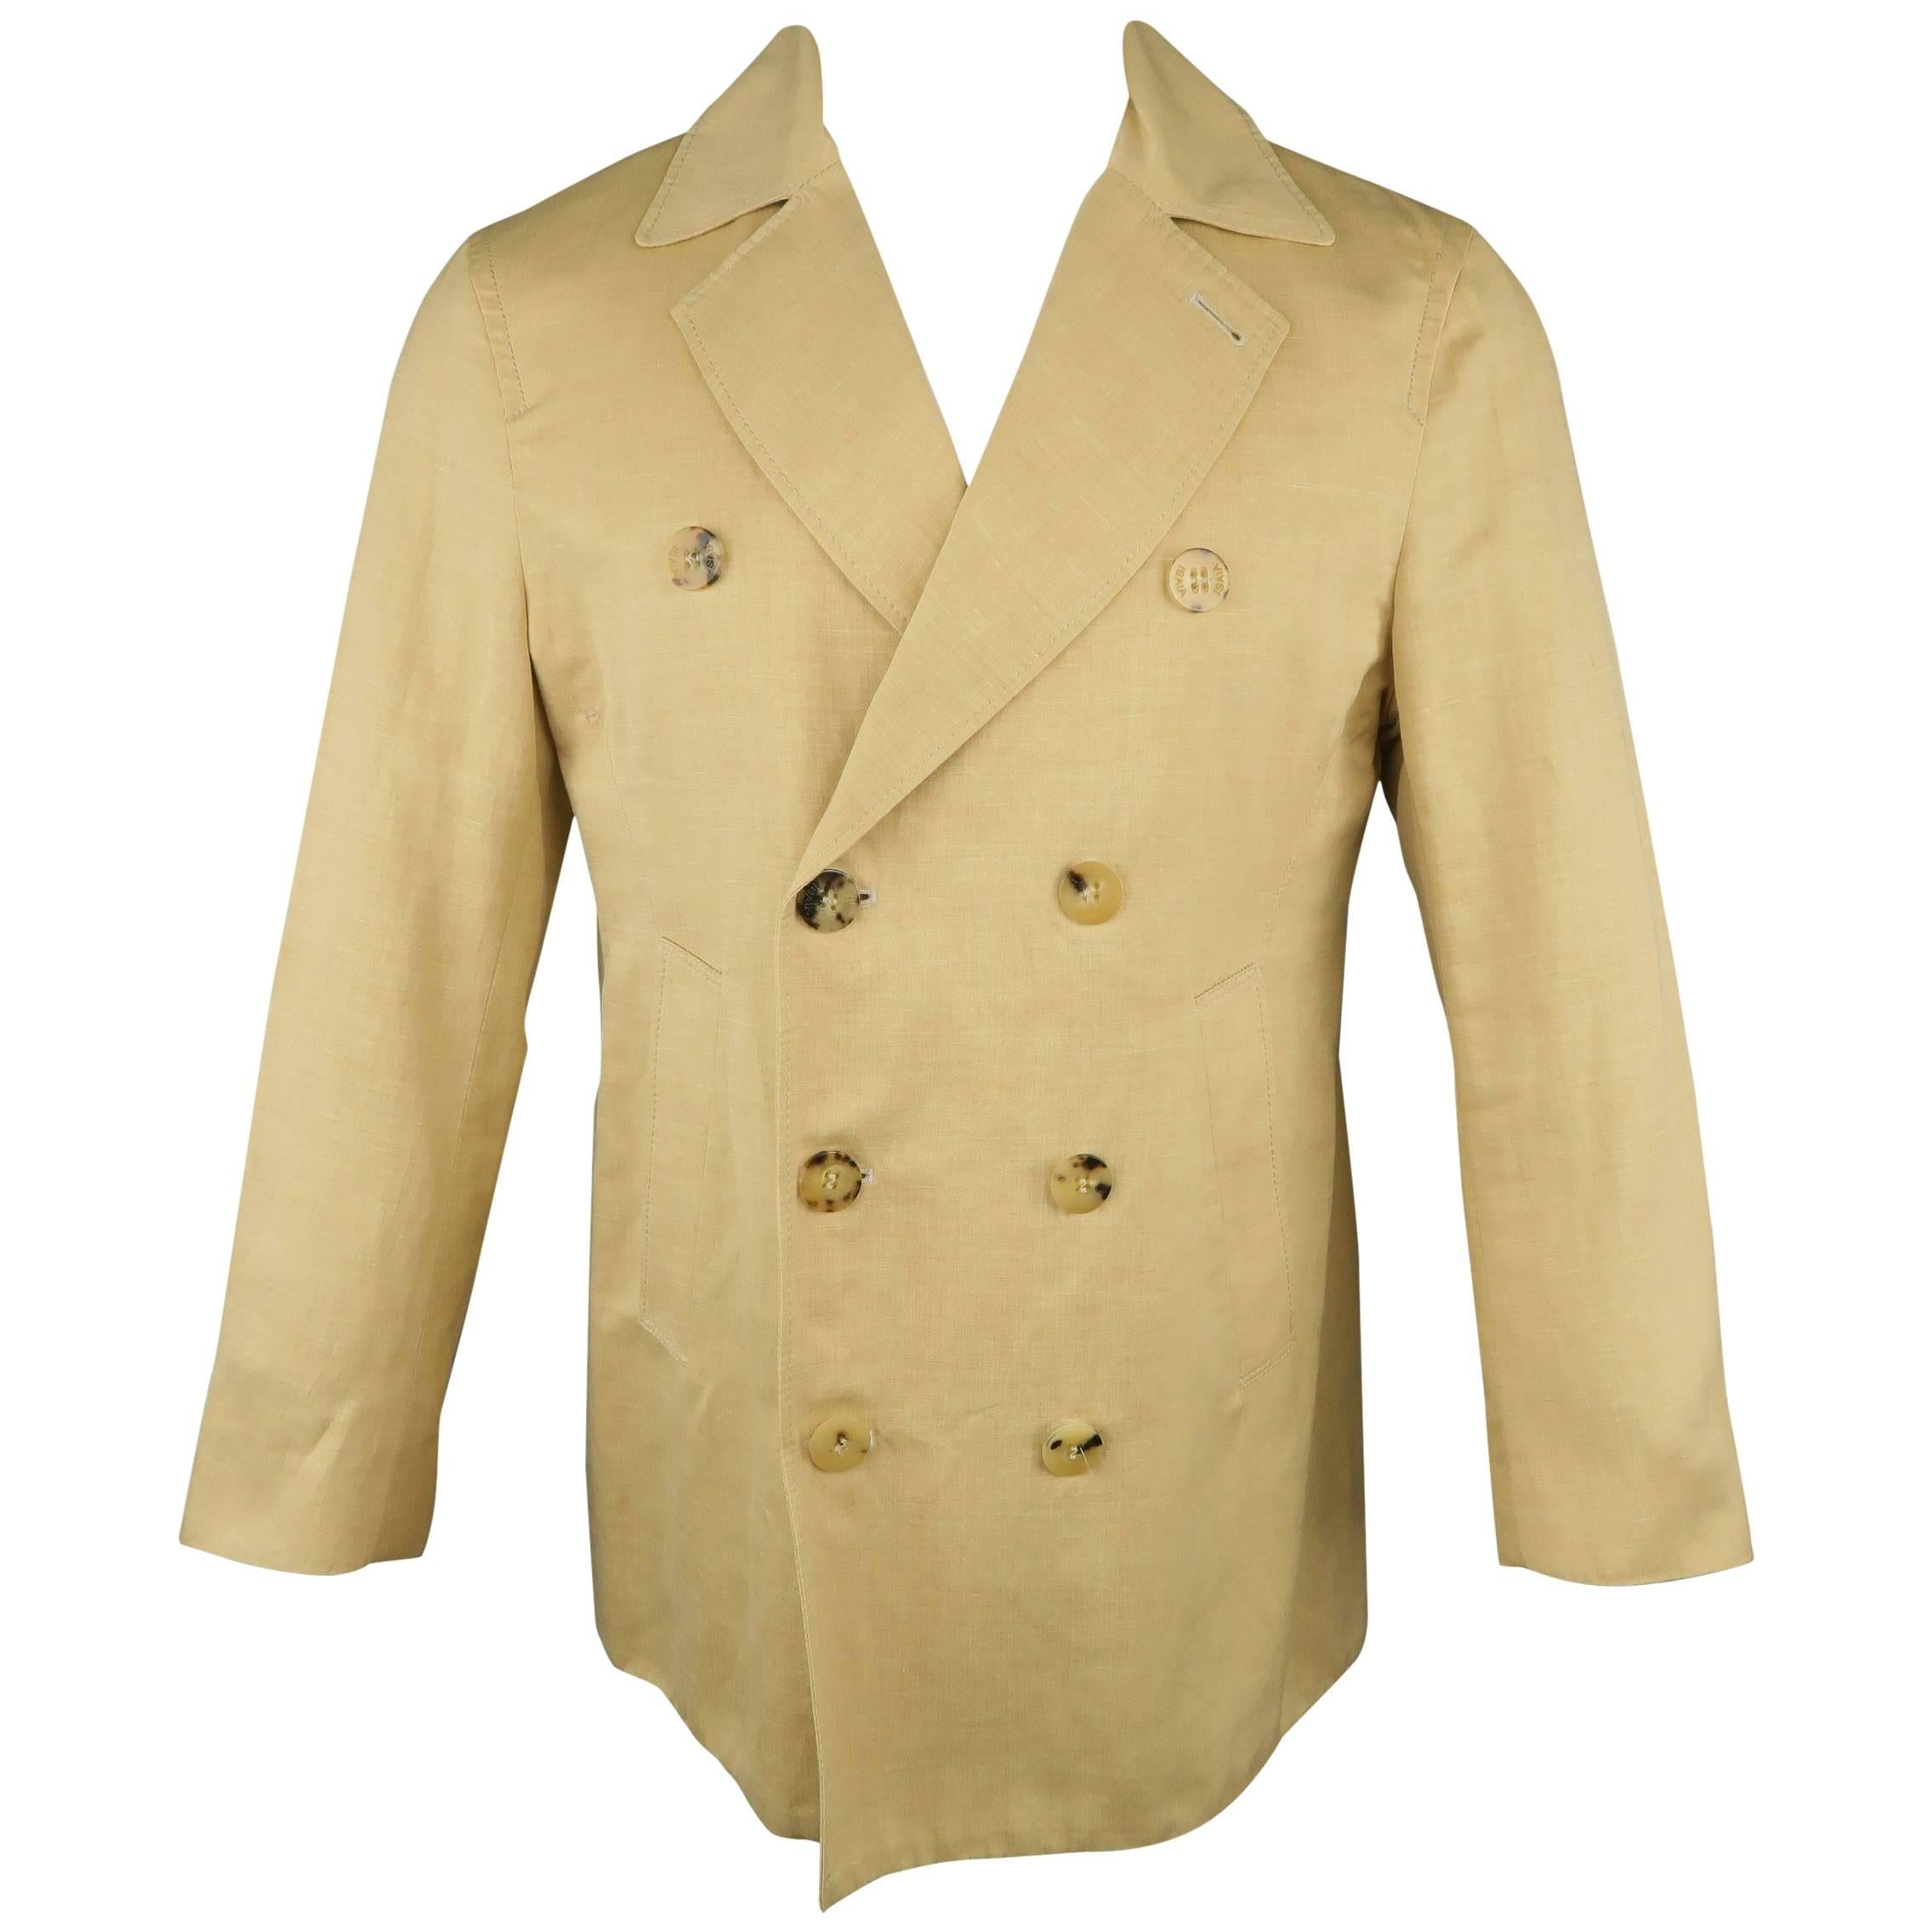 Men's ISAIA 40 Khaki Cotton / Linen Chambray Double Breasted Peacoat Jacket